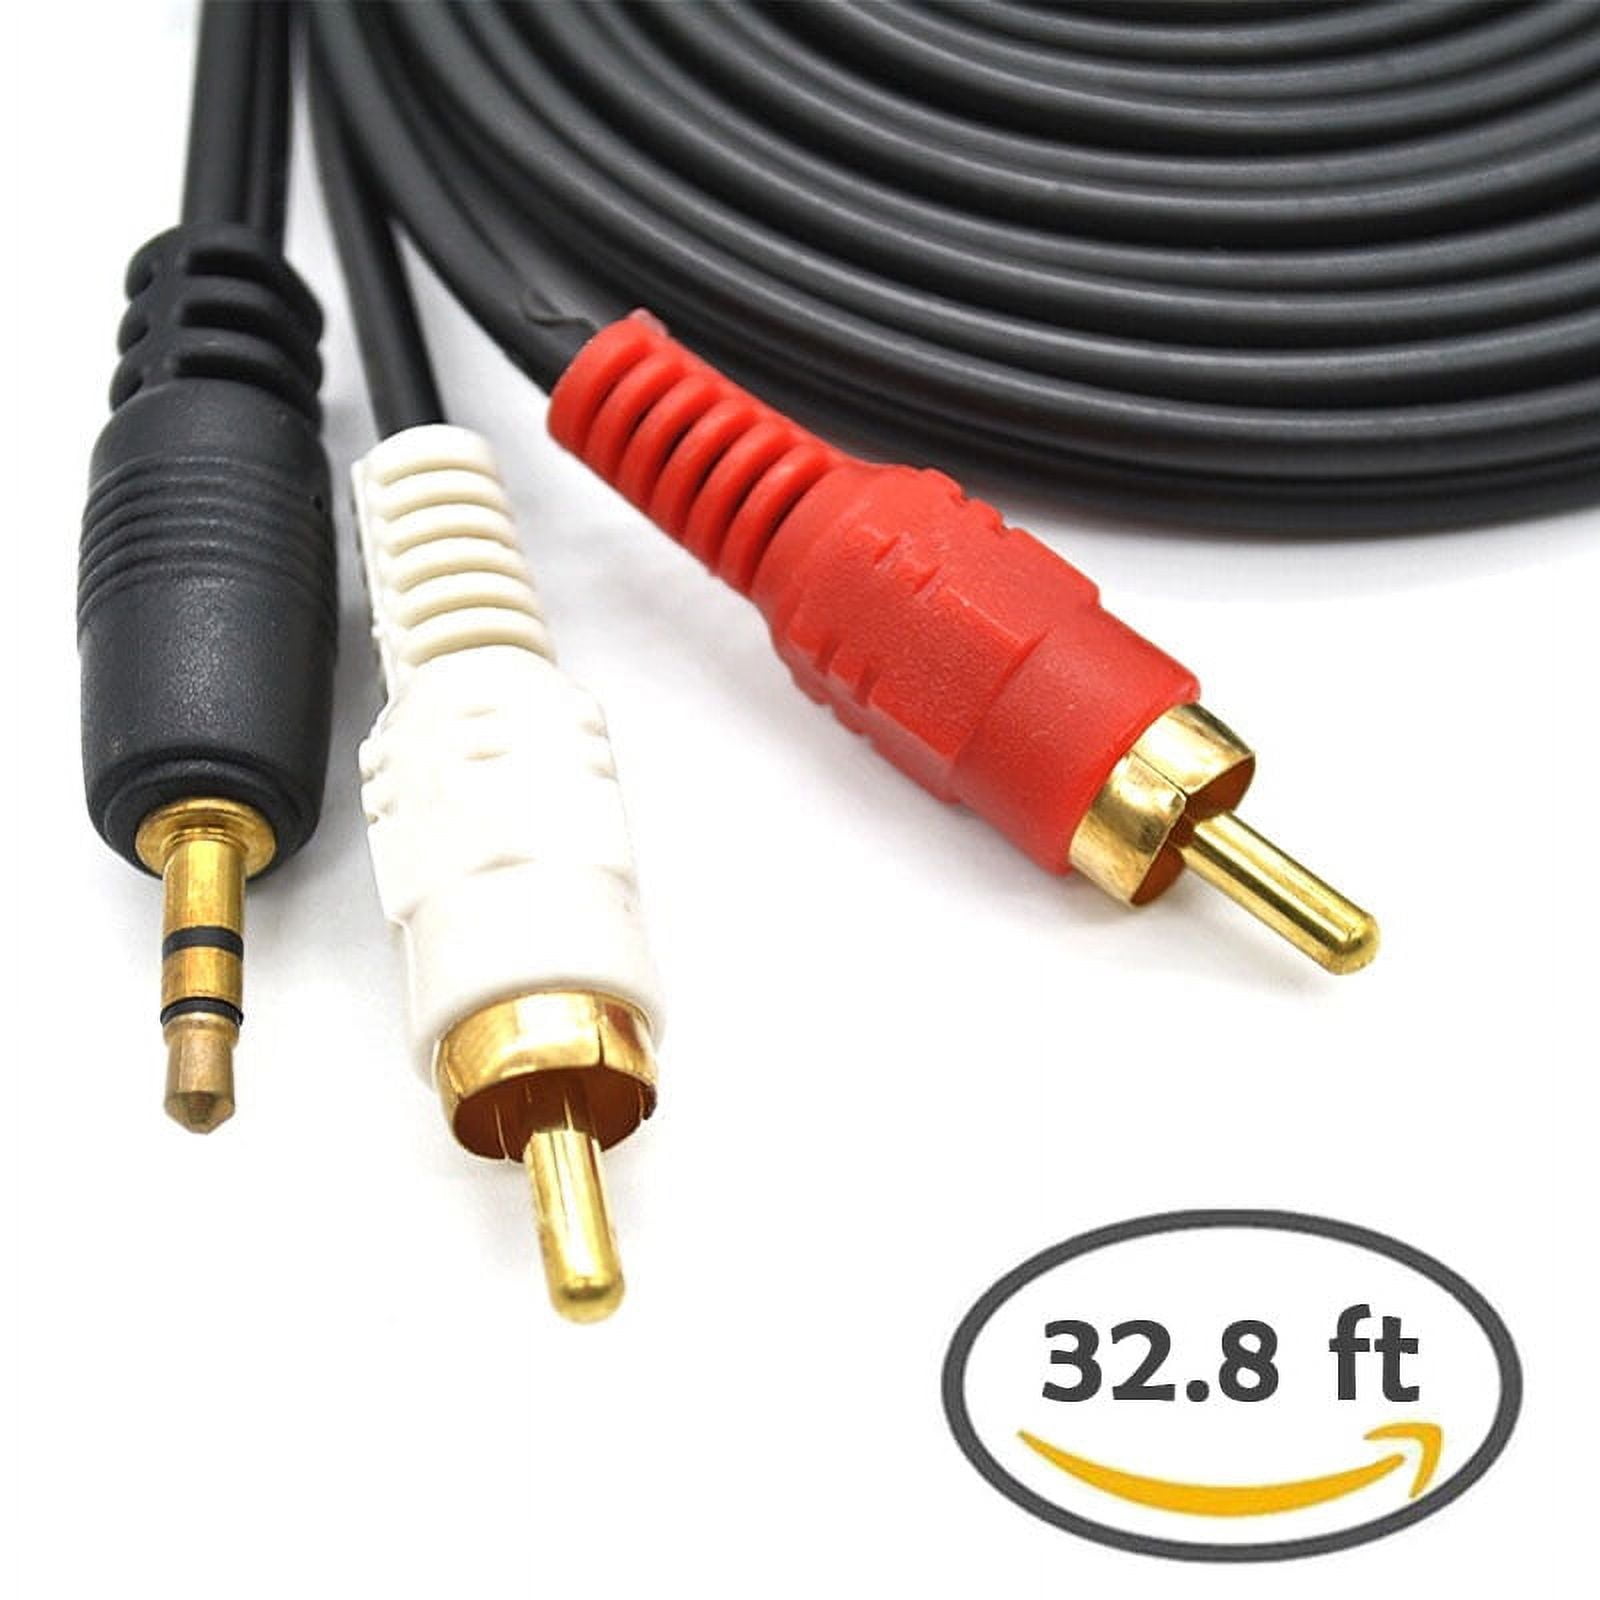 Cable de audio Jack 3,5 mm / 2x RCA machos - 10 m